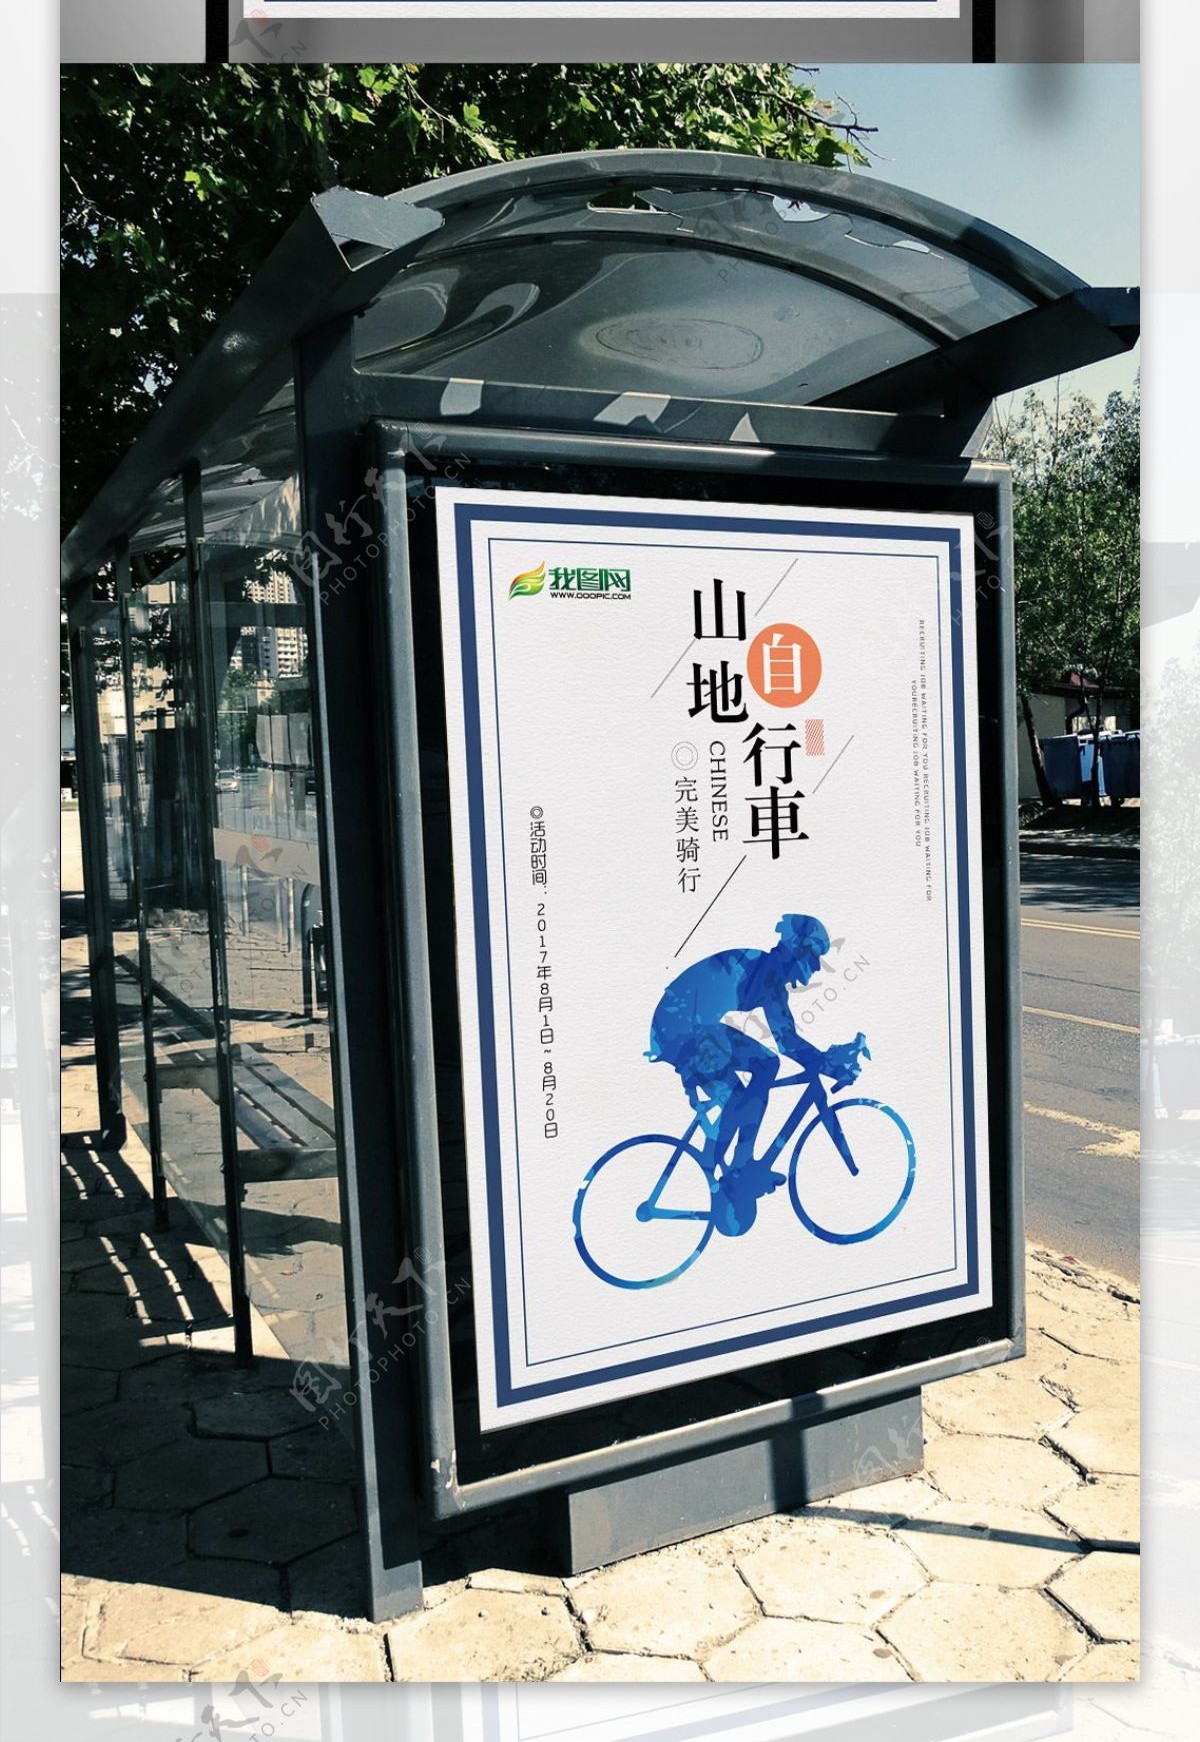 简洁大气山地自行车运动海报